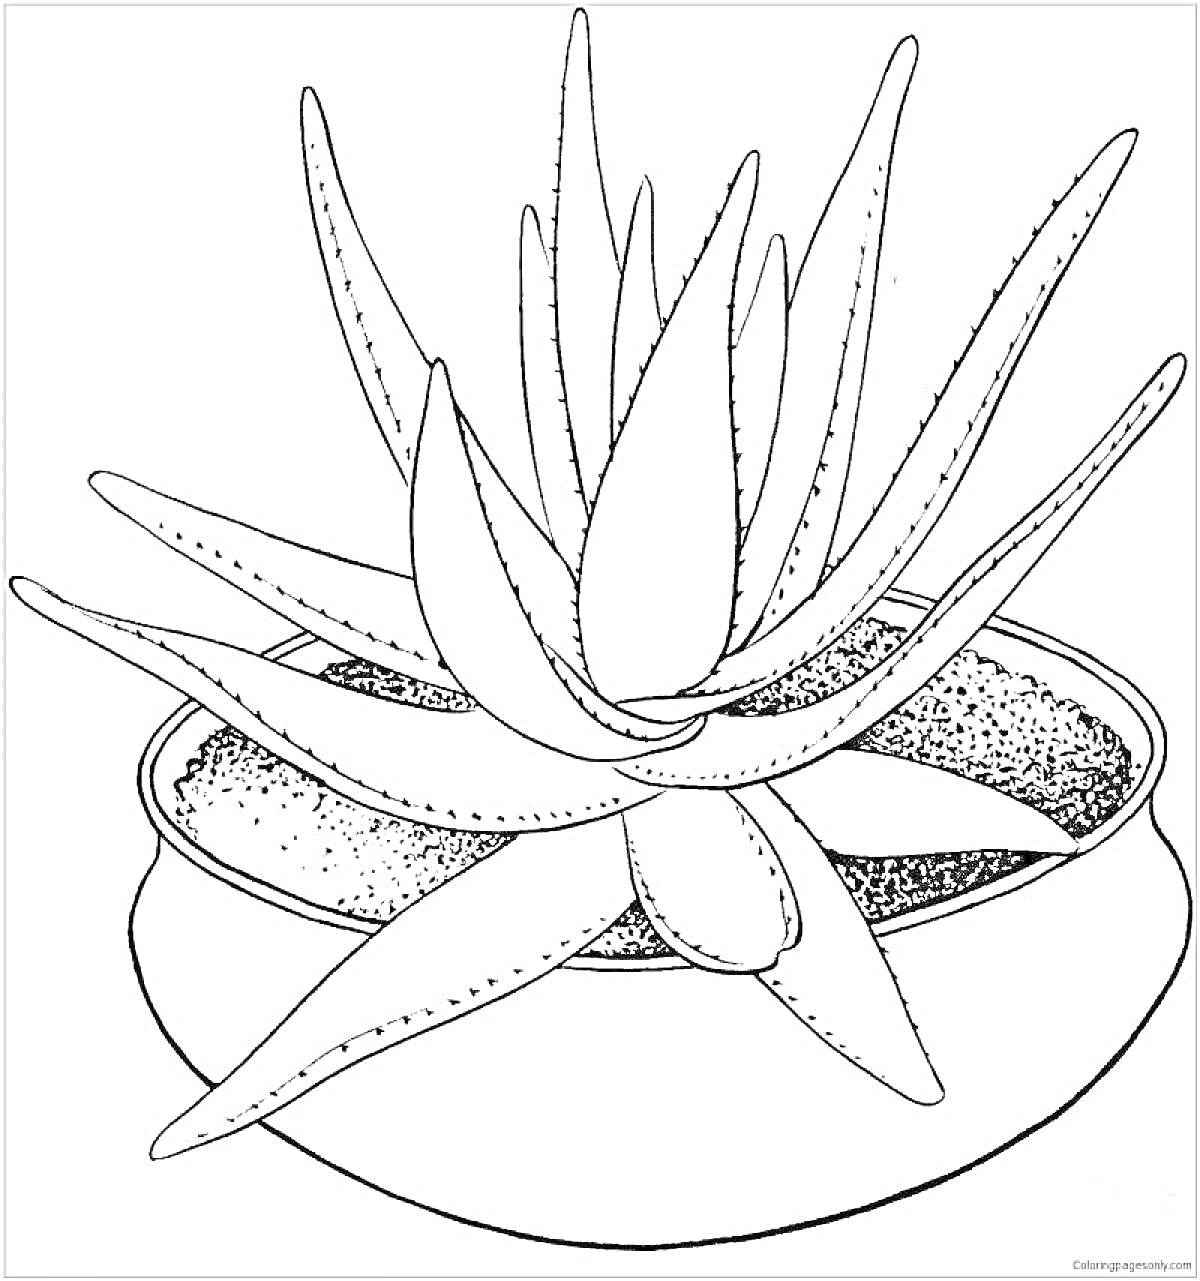 Раскраска Комнатное растение в круглой вазе с широкими листьями, с расположением листьев в горизонтальном и вертикальном направлении